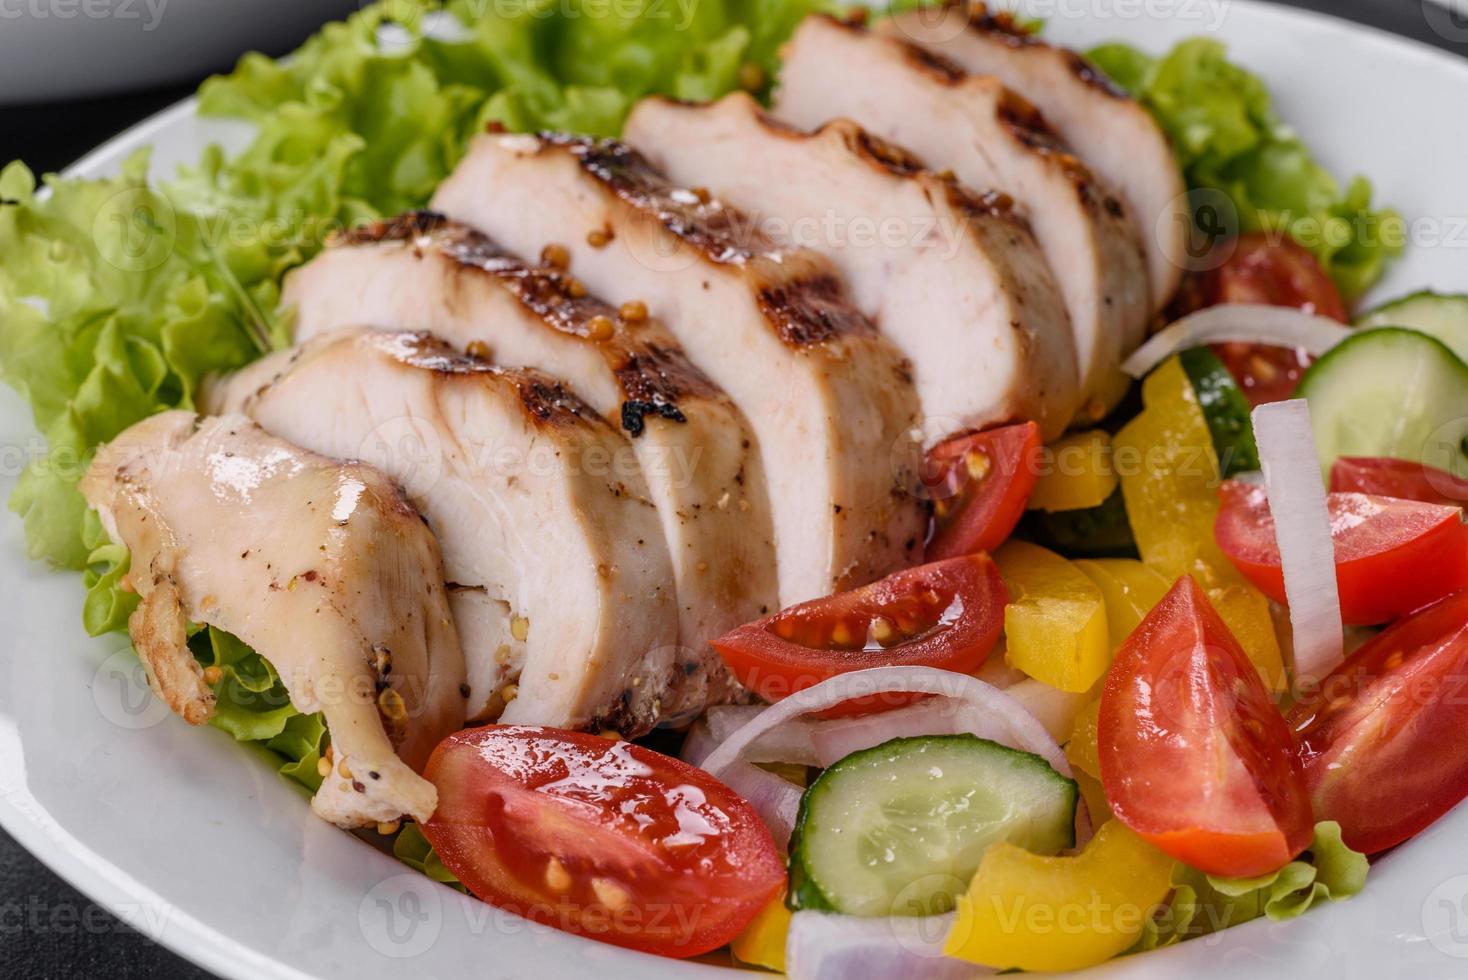 délicieuse salade fraîche avec poulet, tomate, concombre, oignons et légumes verts à l'huile d'olive photo